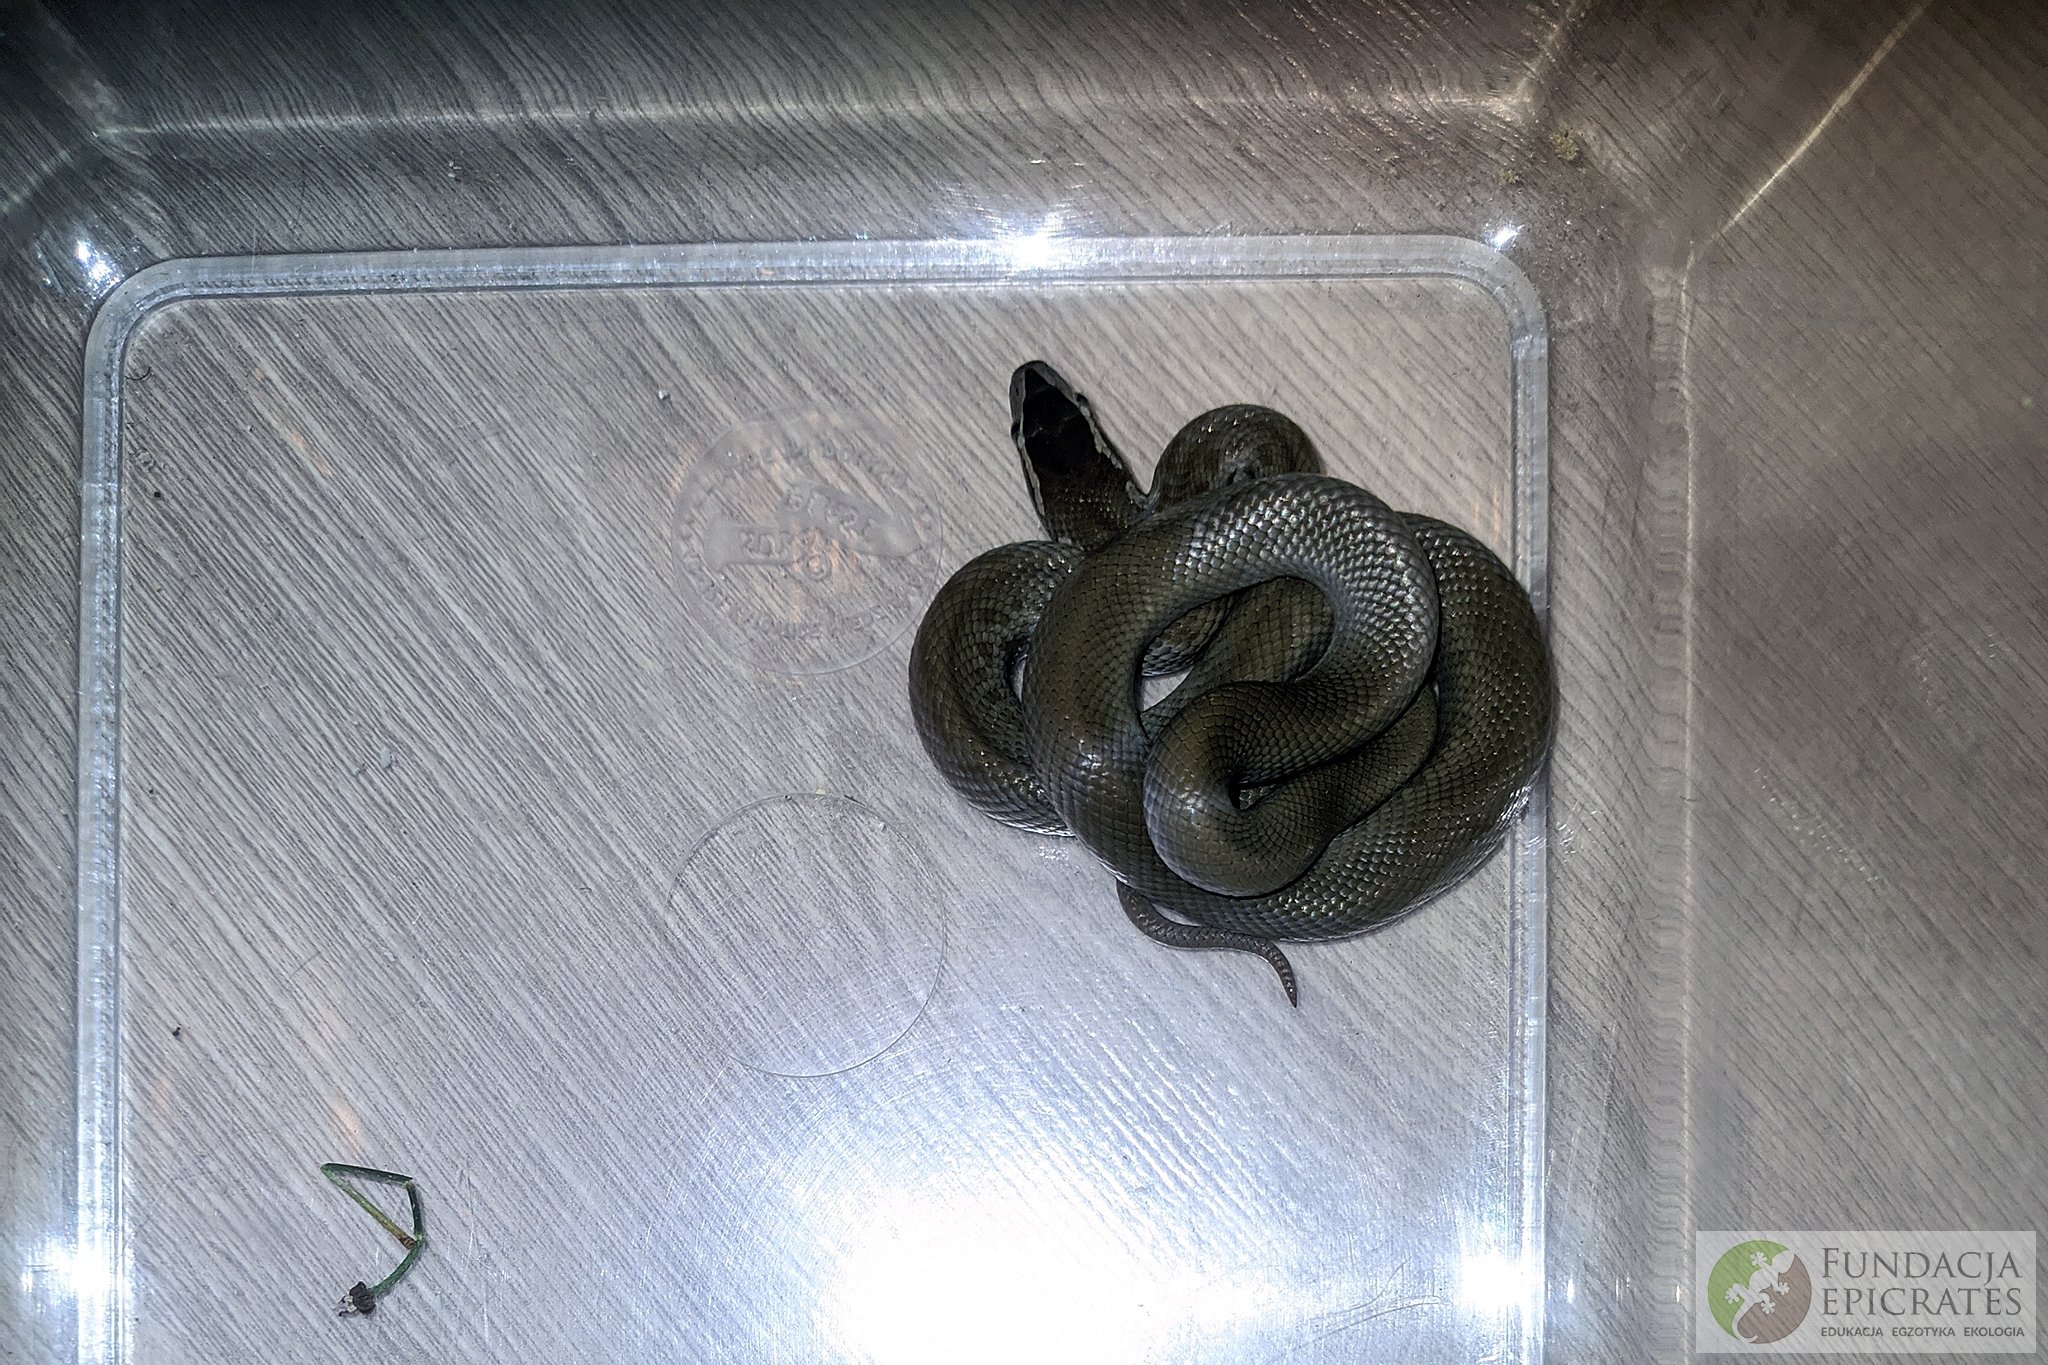 Na plecy mężczyzny znajdującego się w toalecie spadł wąż. Trwa ustalanie do kogo należy zwierzę (zdjęcia)